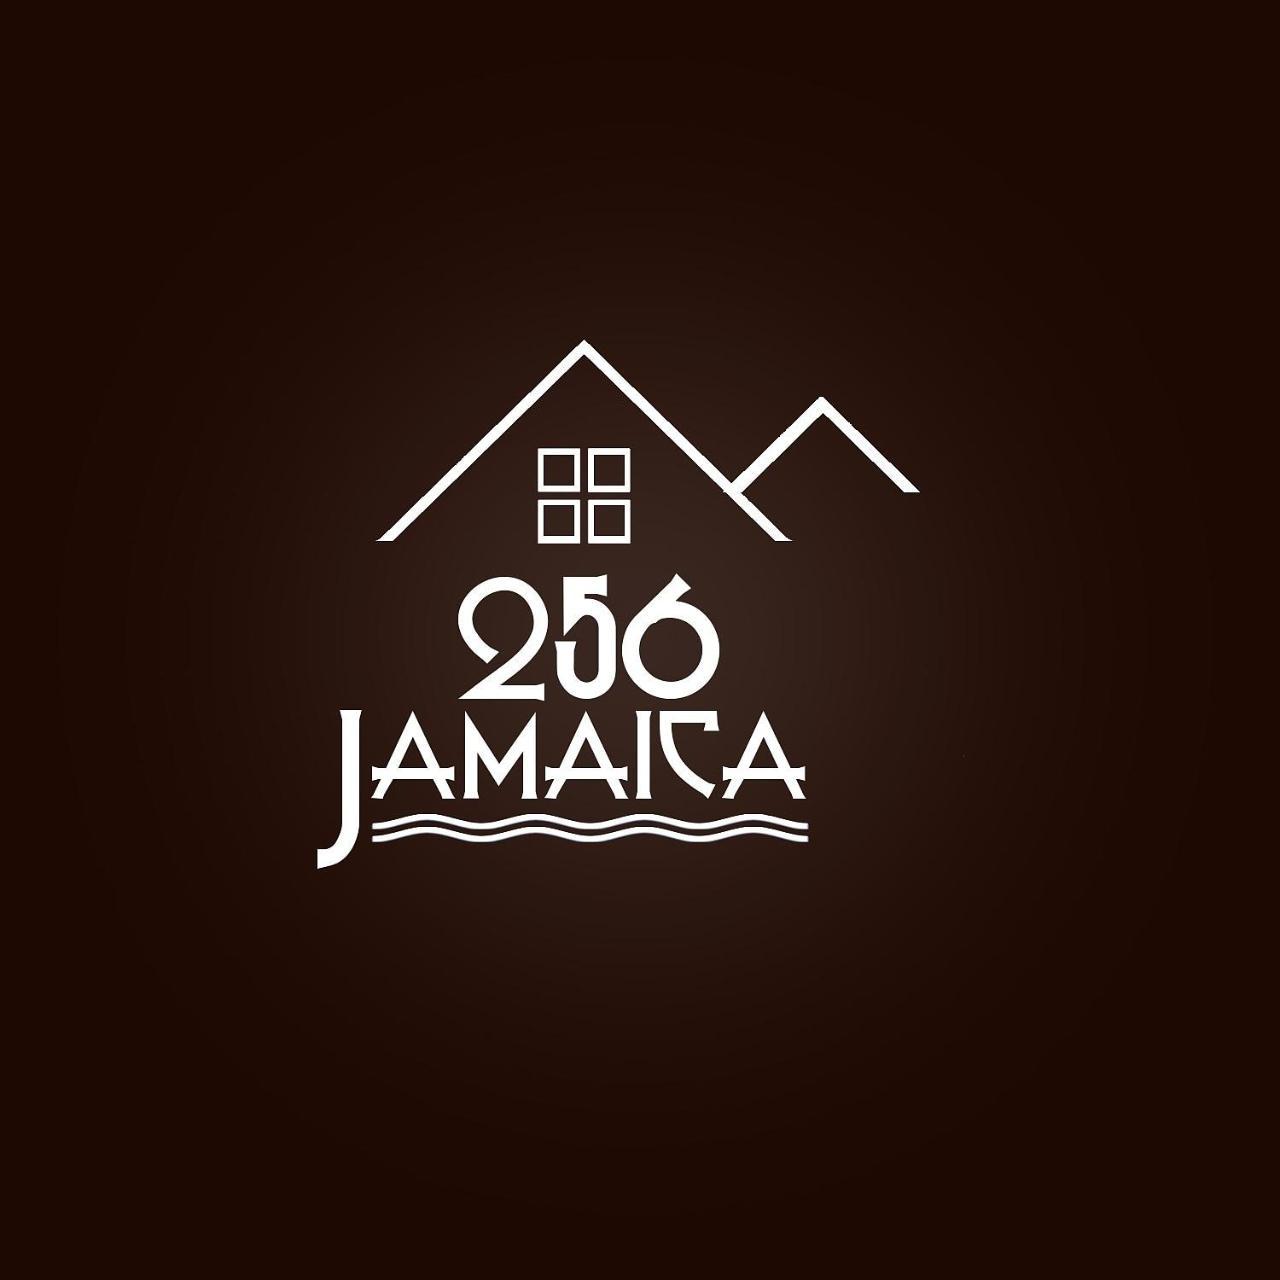 蒙特哥贝256 Jamaica别墅 外观 照片